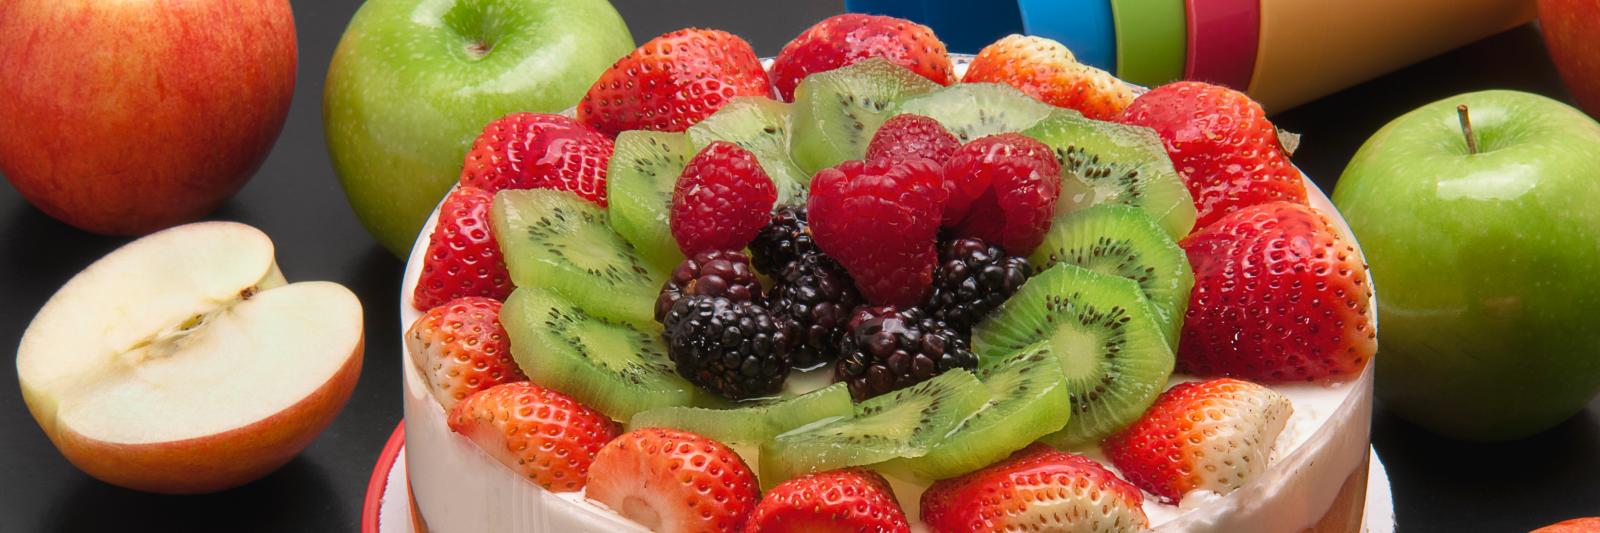 Cheescake ricoperta di frutta fresca; accanto mele, posate e bicchieri di plastica